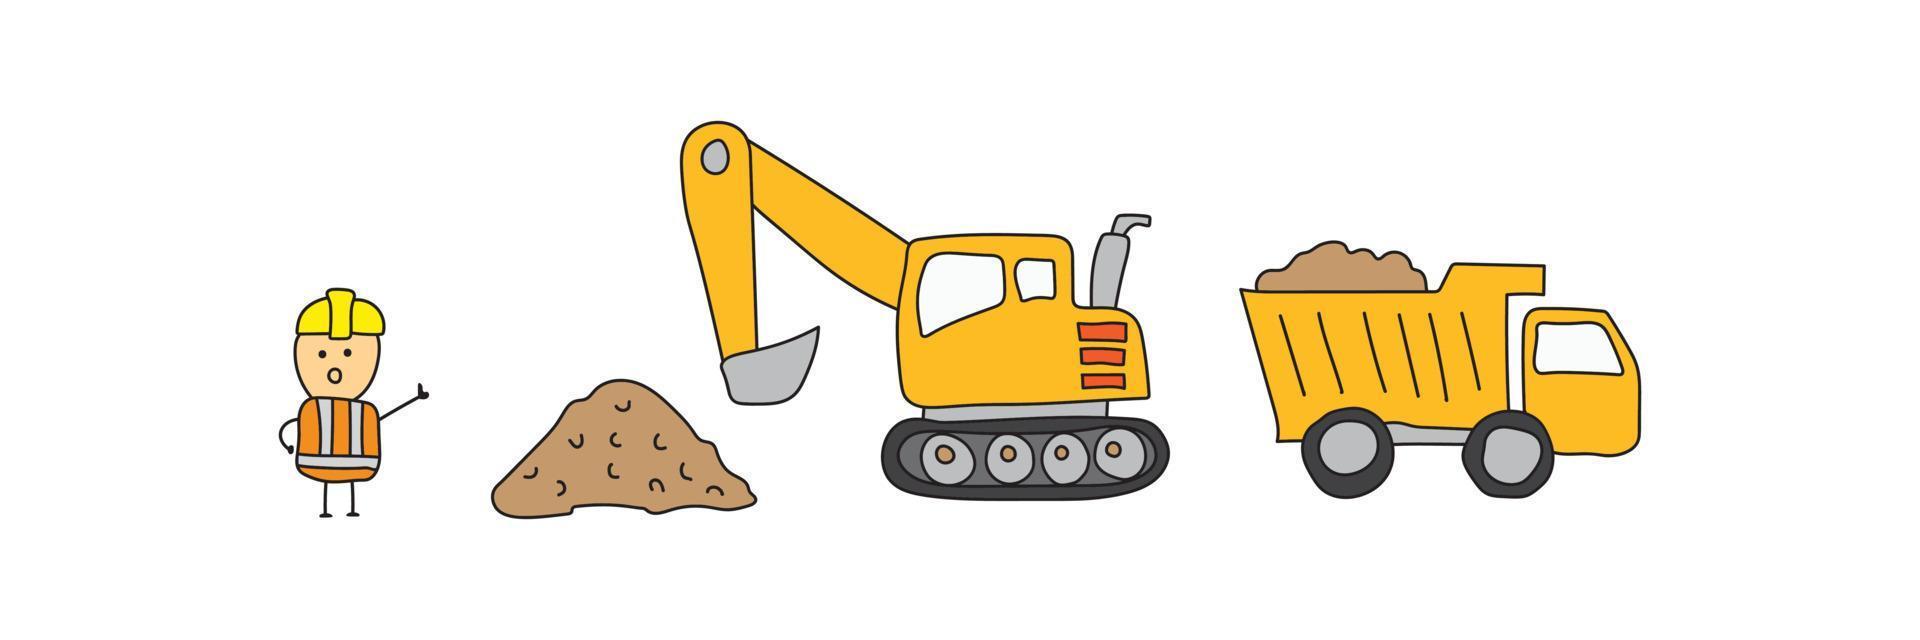 juego de construcción camión volquete excavadora, vehículos pesados de transporte de construcción vector